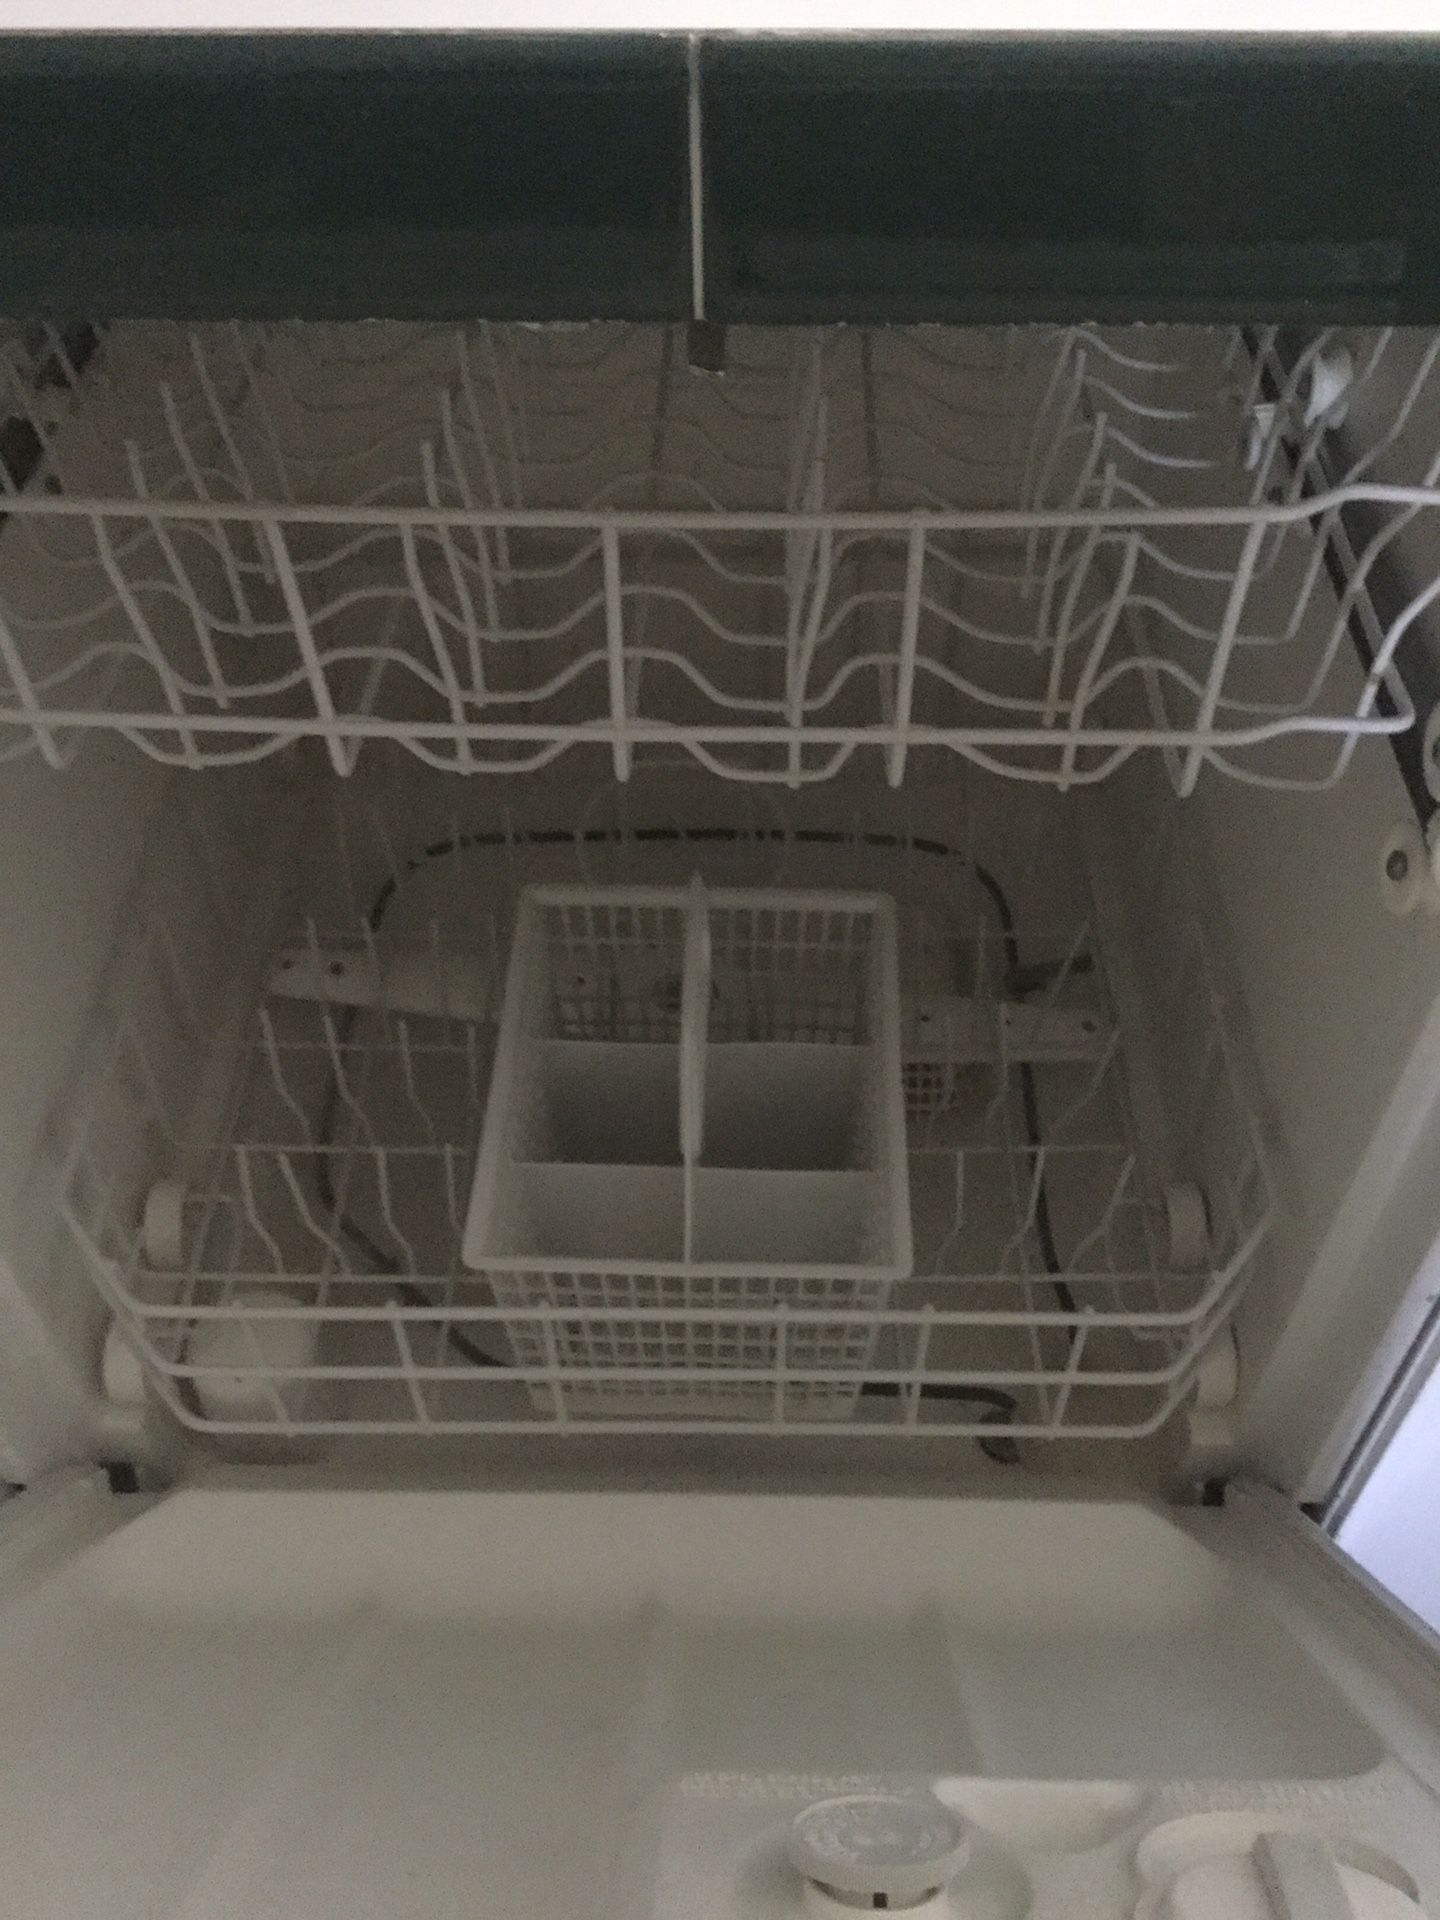 GE 500 dishwasher